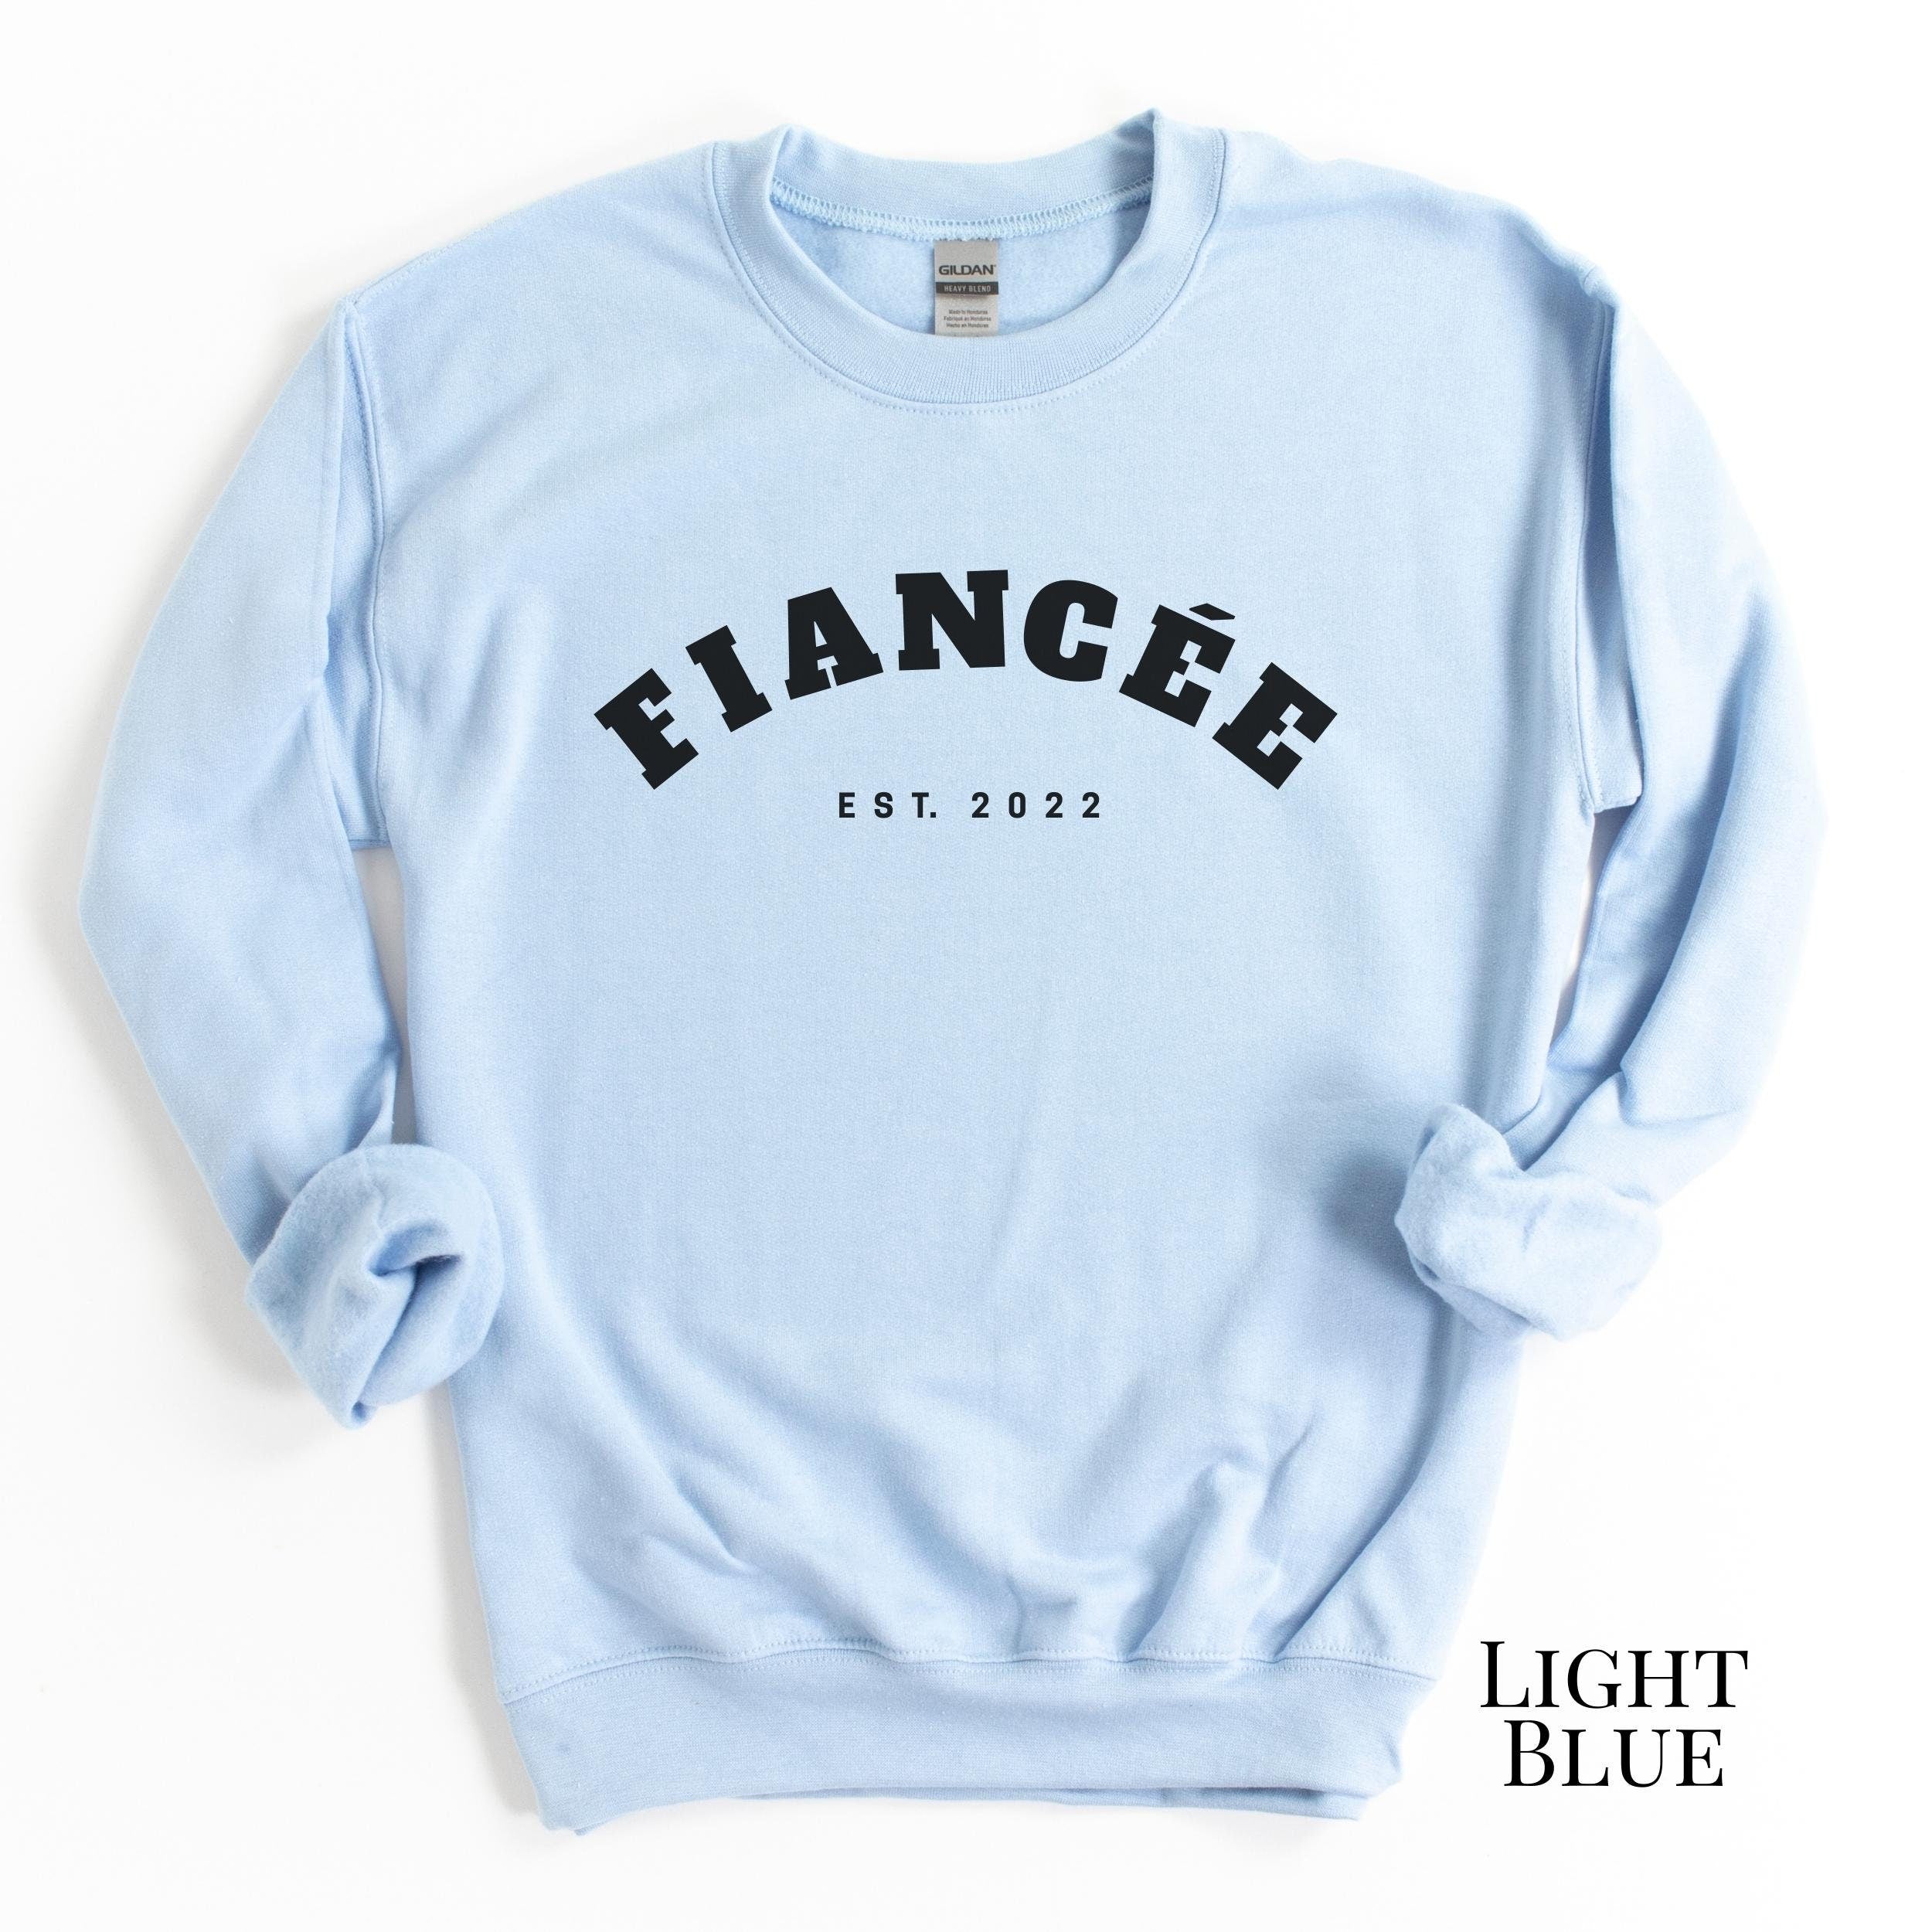 Fiancé Arched Sweatshirt (His)